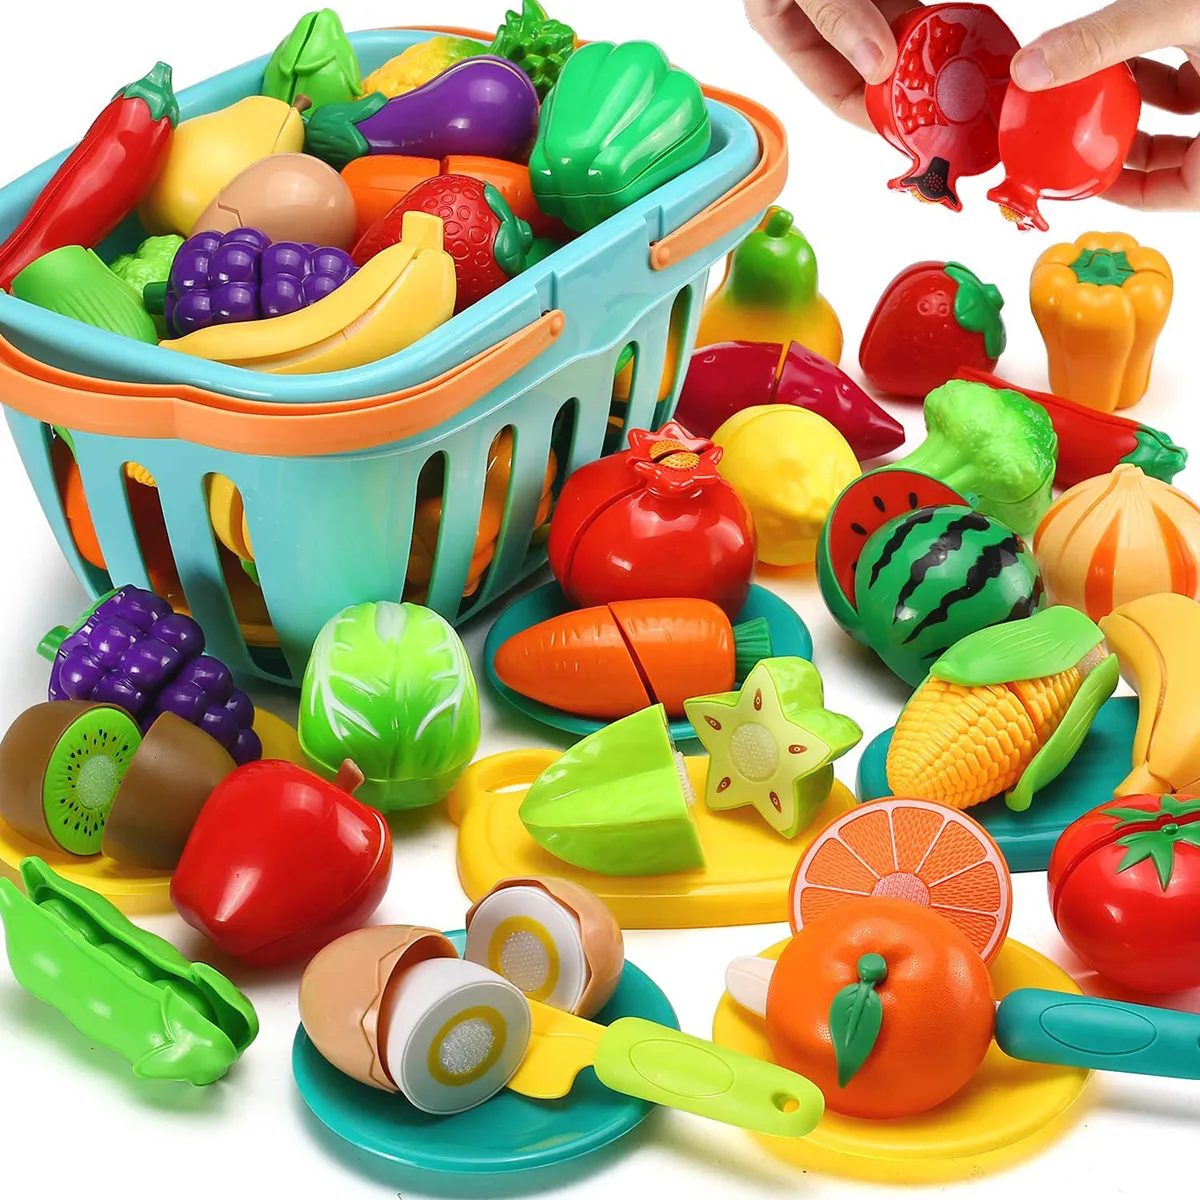 Cucine Gioca Cibo Bambini Finta Cucina Set di giocattoli Taglio Frutta Verdura Casa Simulazione Giocattoli Educazione precoce Ragazze Ragazzi Regali 230925